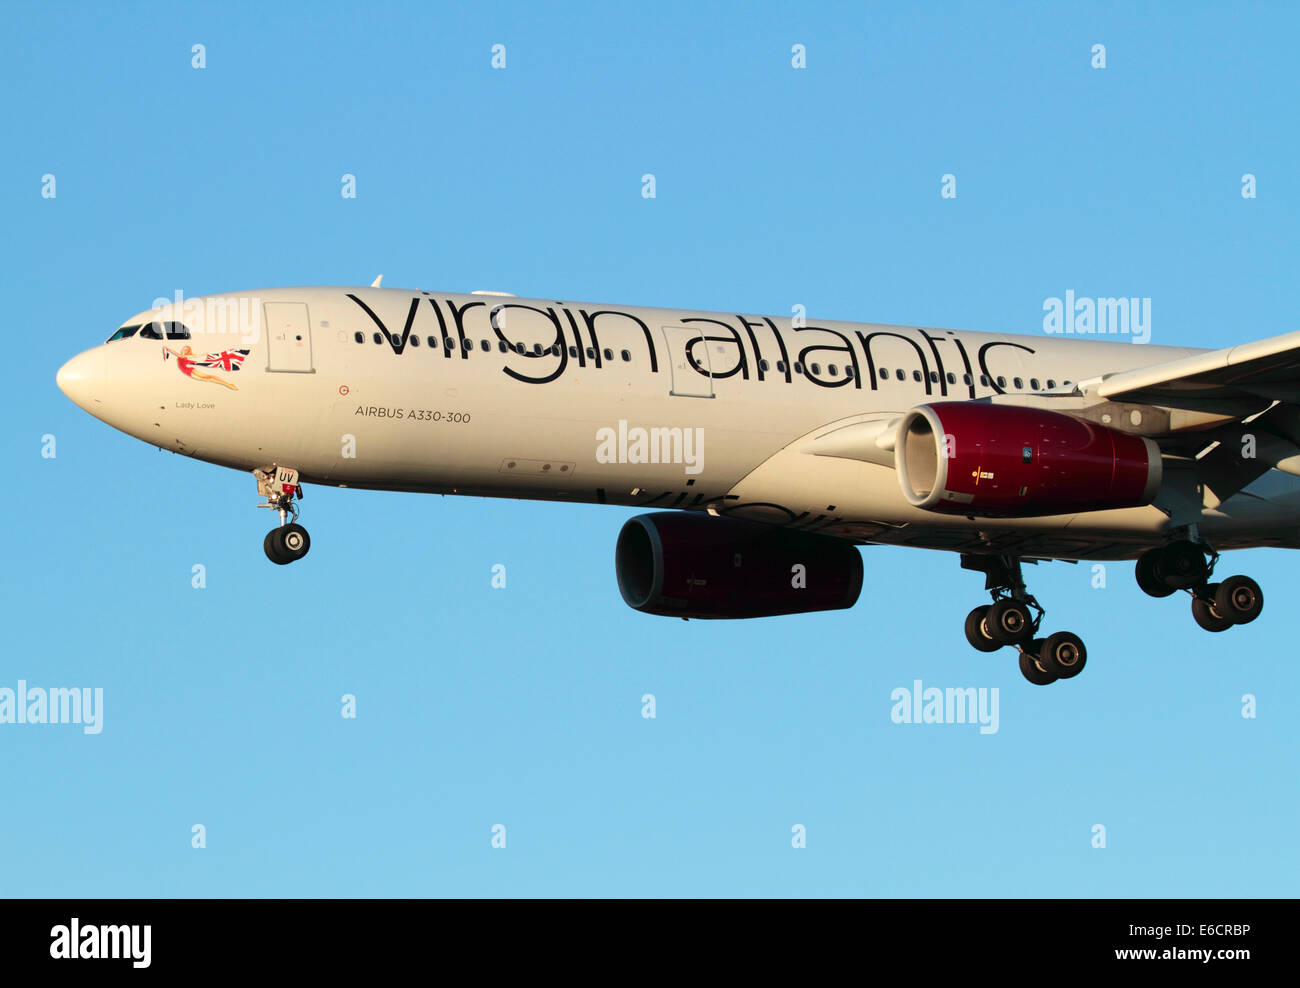 Virgin Atlantic Airways Airbus A330-300 long-courrier avion en approche finale au coucher du soleil. Close-up de la partie avant en vue de côté. Banque D'Images